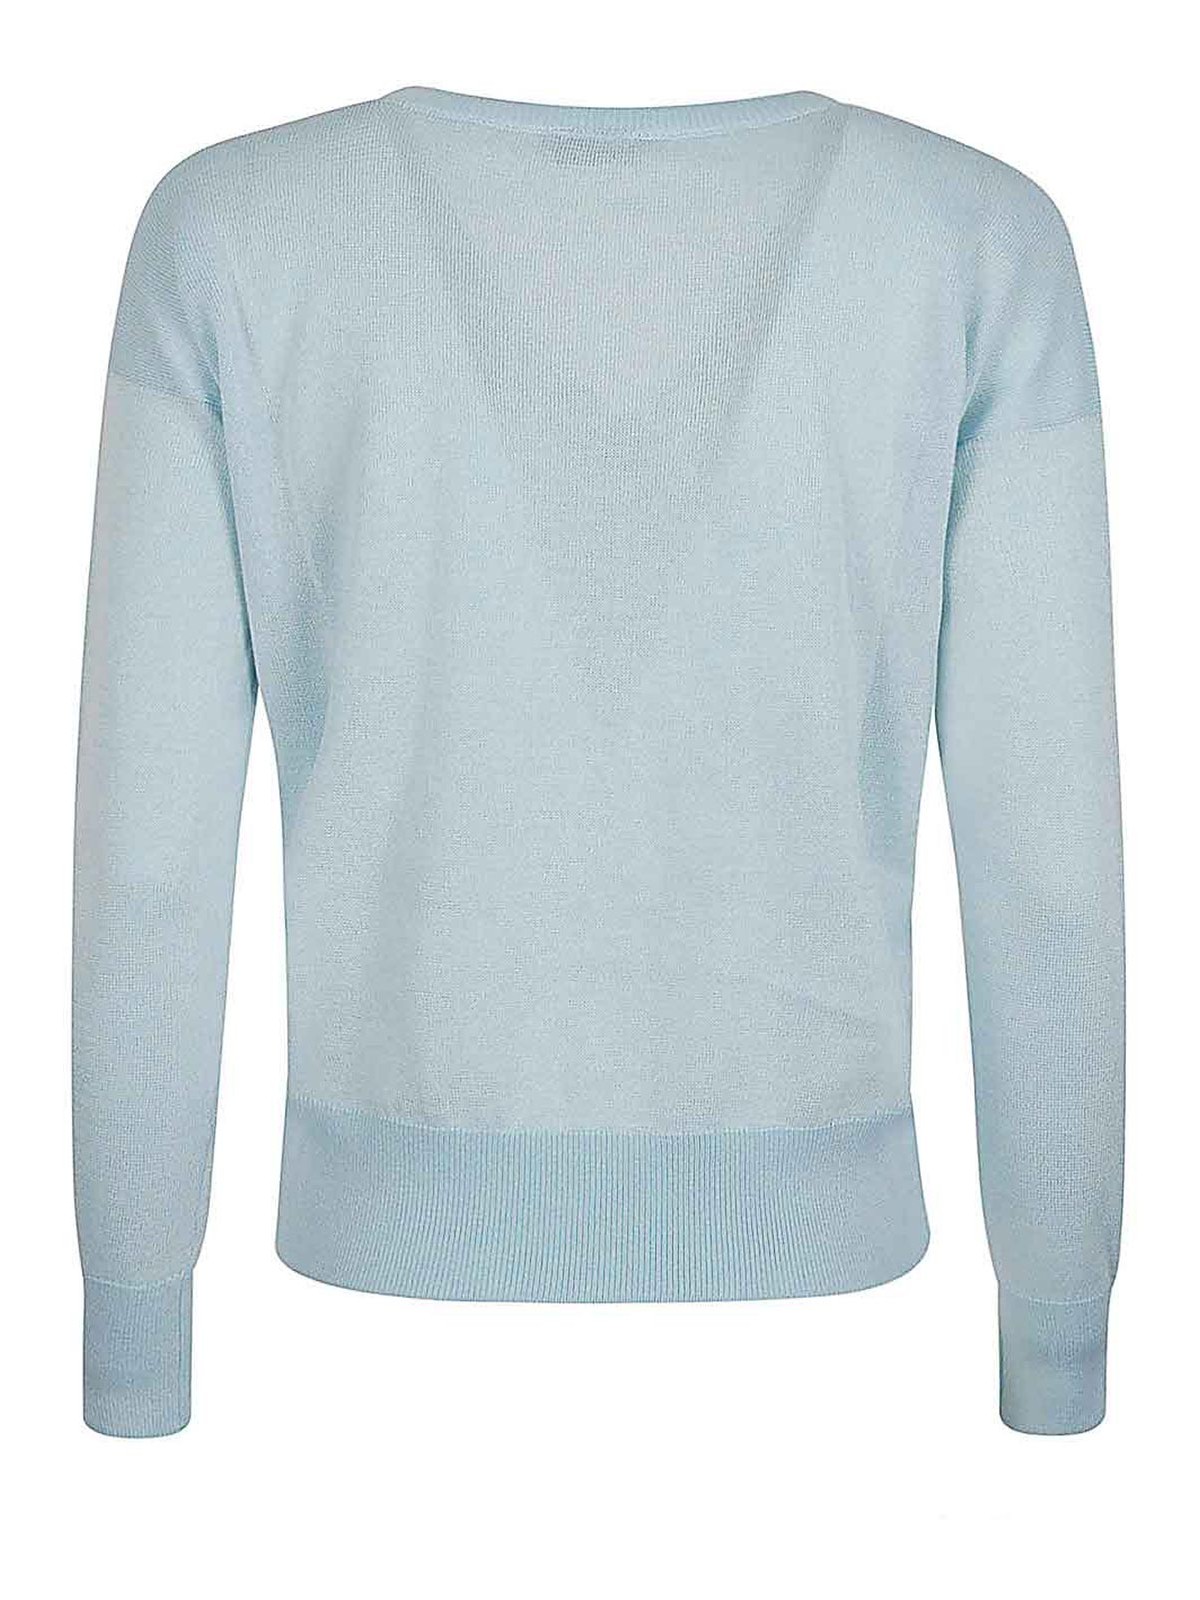 Shop Base Cotton Blend V-neck Sweater In Blue